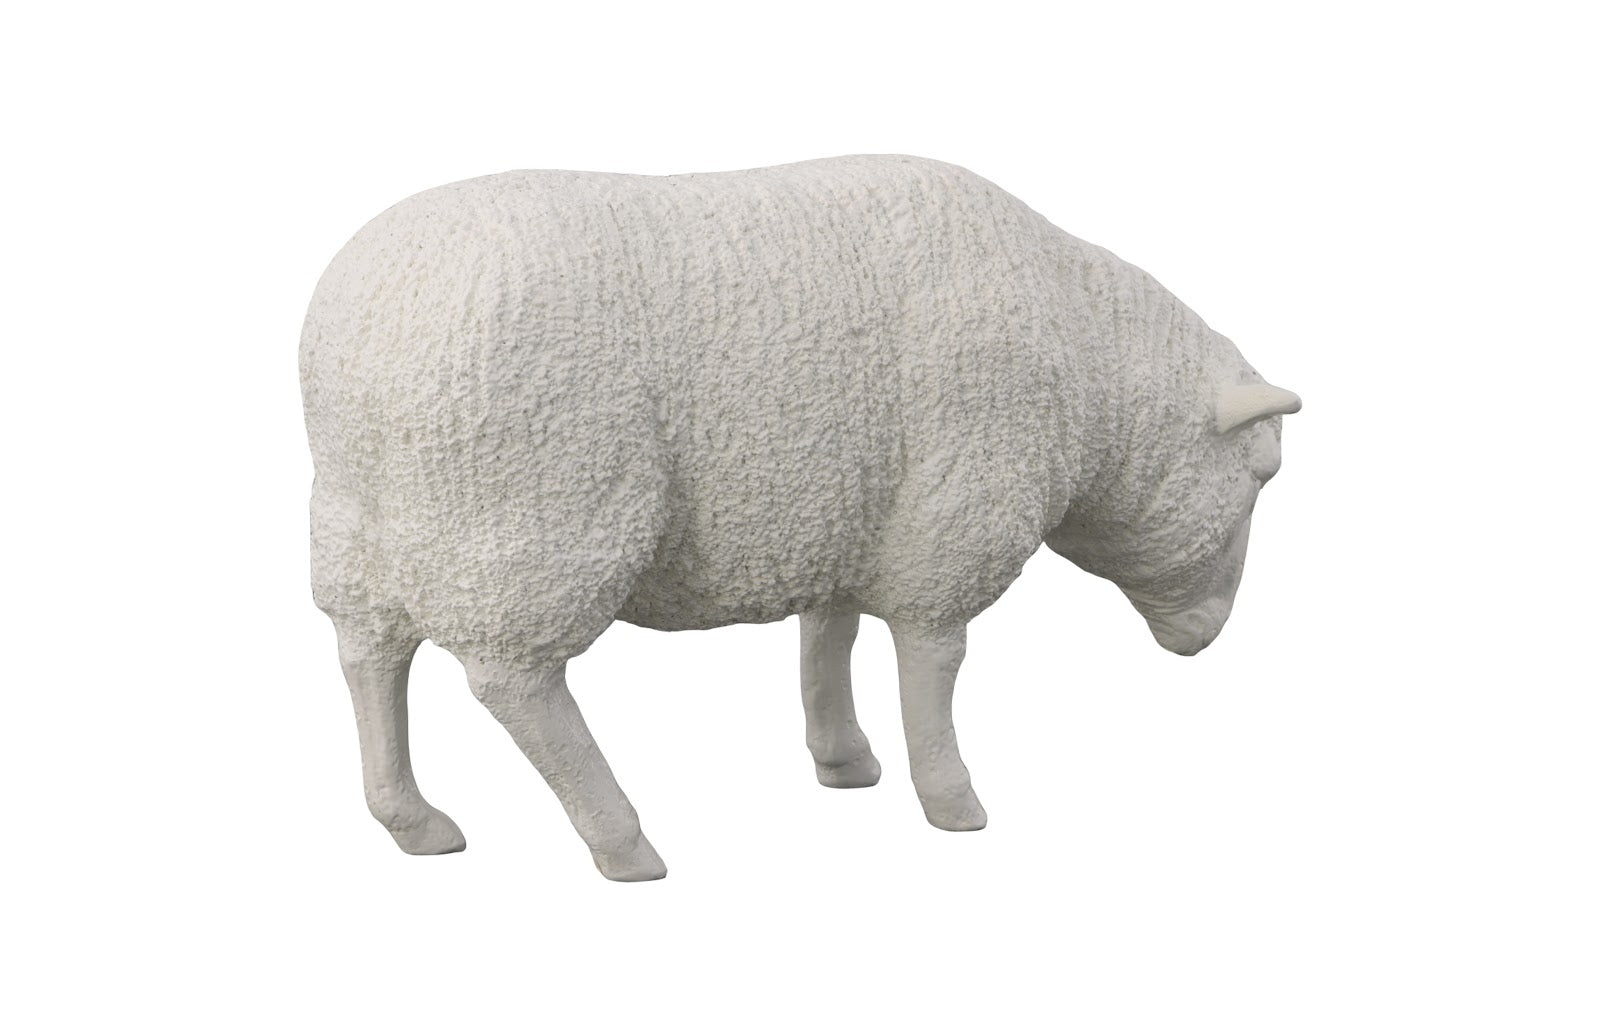 Sheep Sculpture - Statue